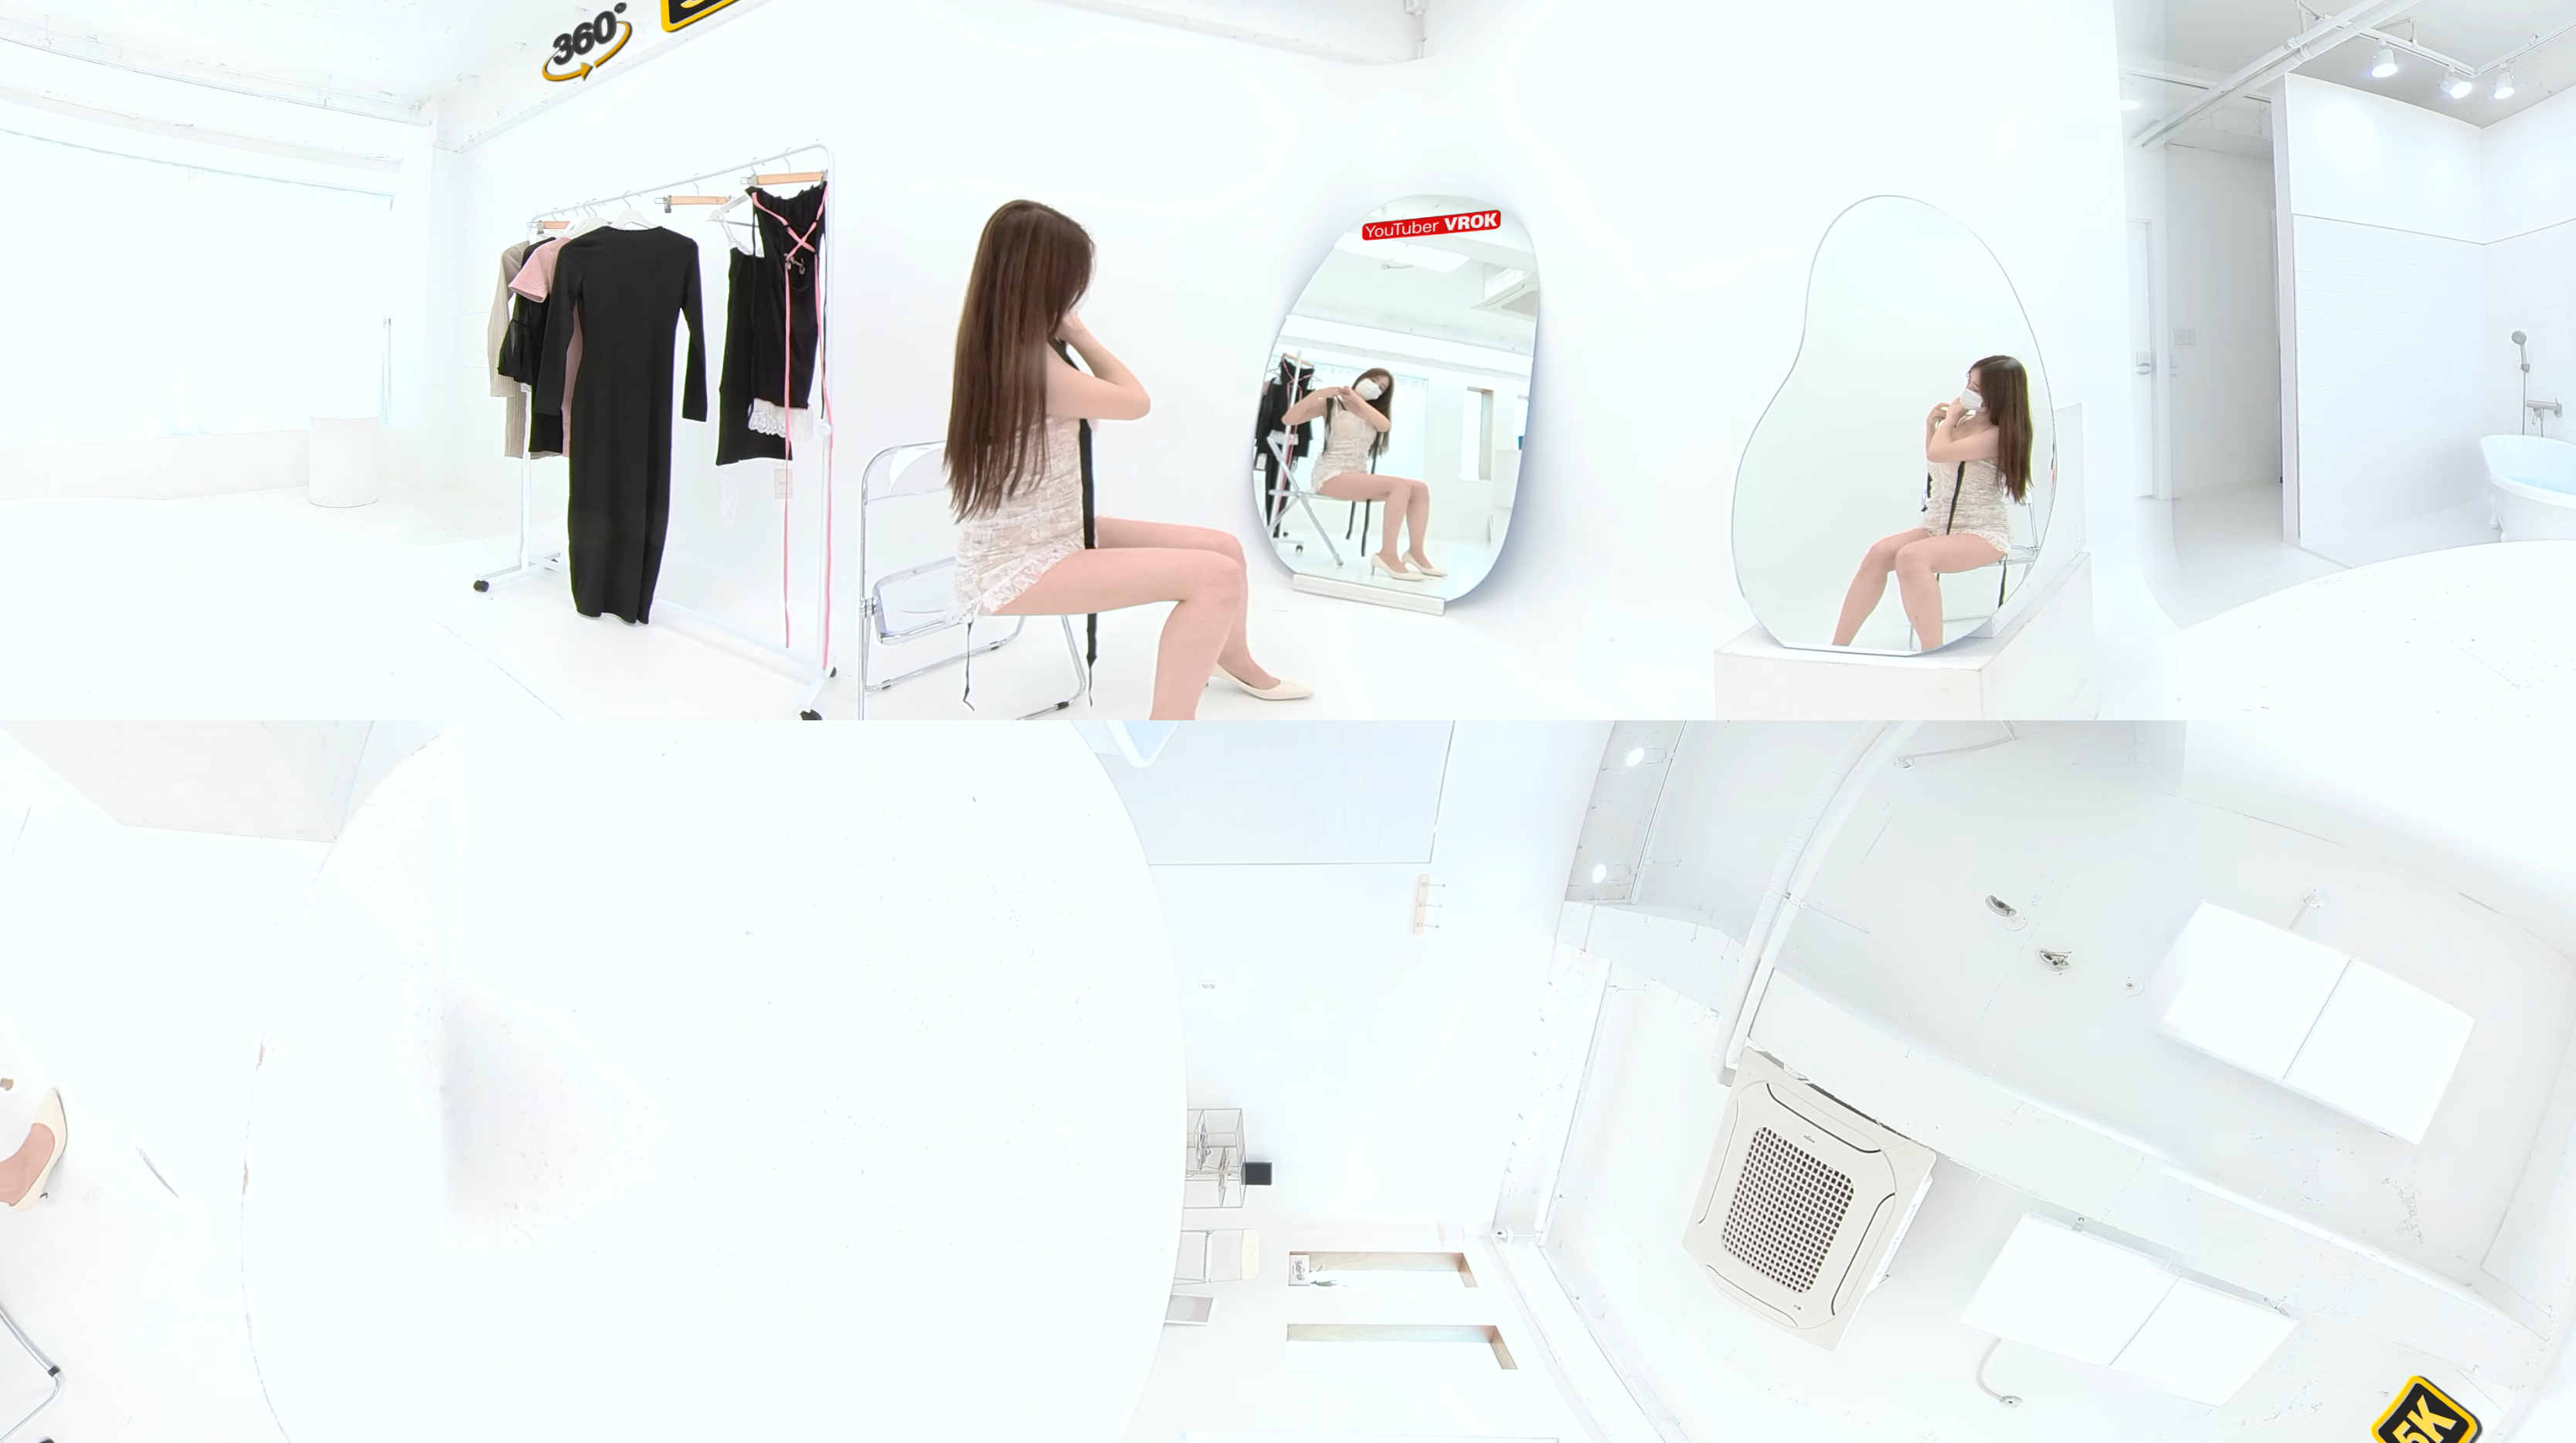 VR360°4K -性感的换衣秀- 브이록만의 섹시 룩북 2 SPECIAL SEXY LOOKBOOK 4kVR视频下载 ...